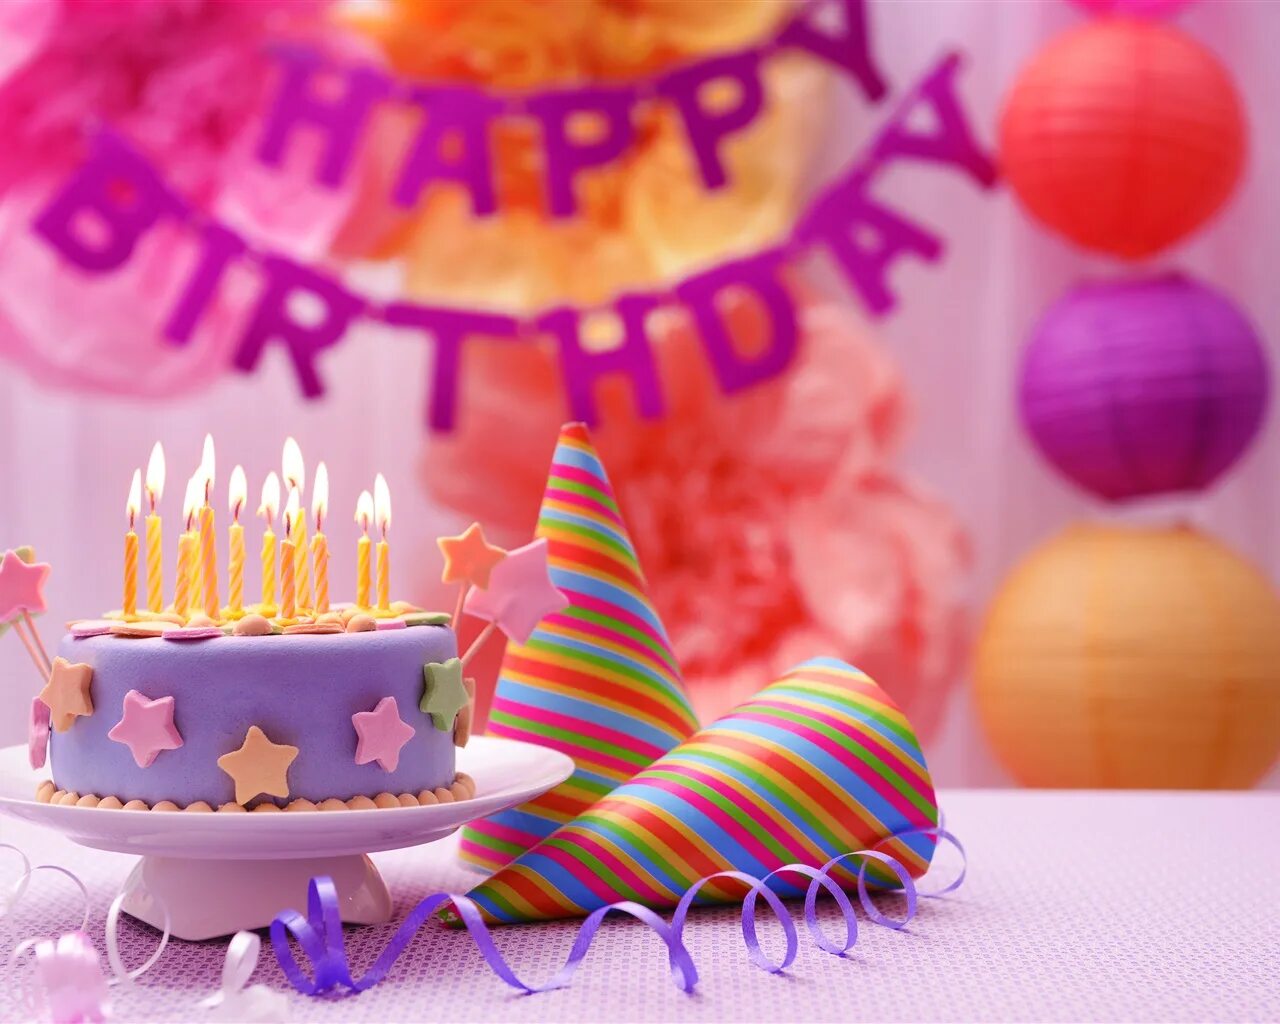 С днем рождения с тортом и шарами. С днем рождения. Тортик с днем рождения. Открытка с днём рождения торт. С днем рождения торт и цветы.